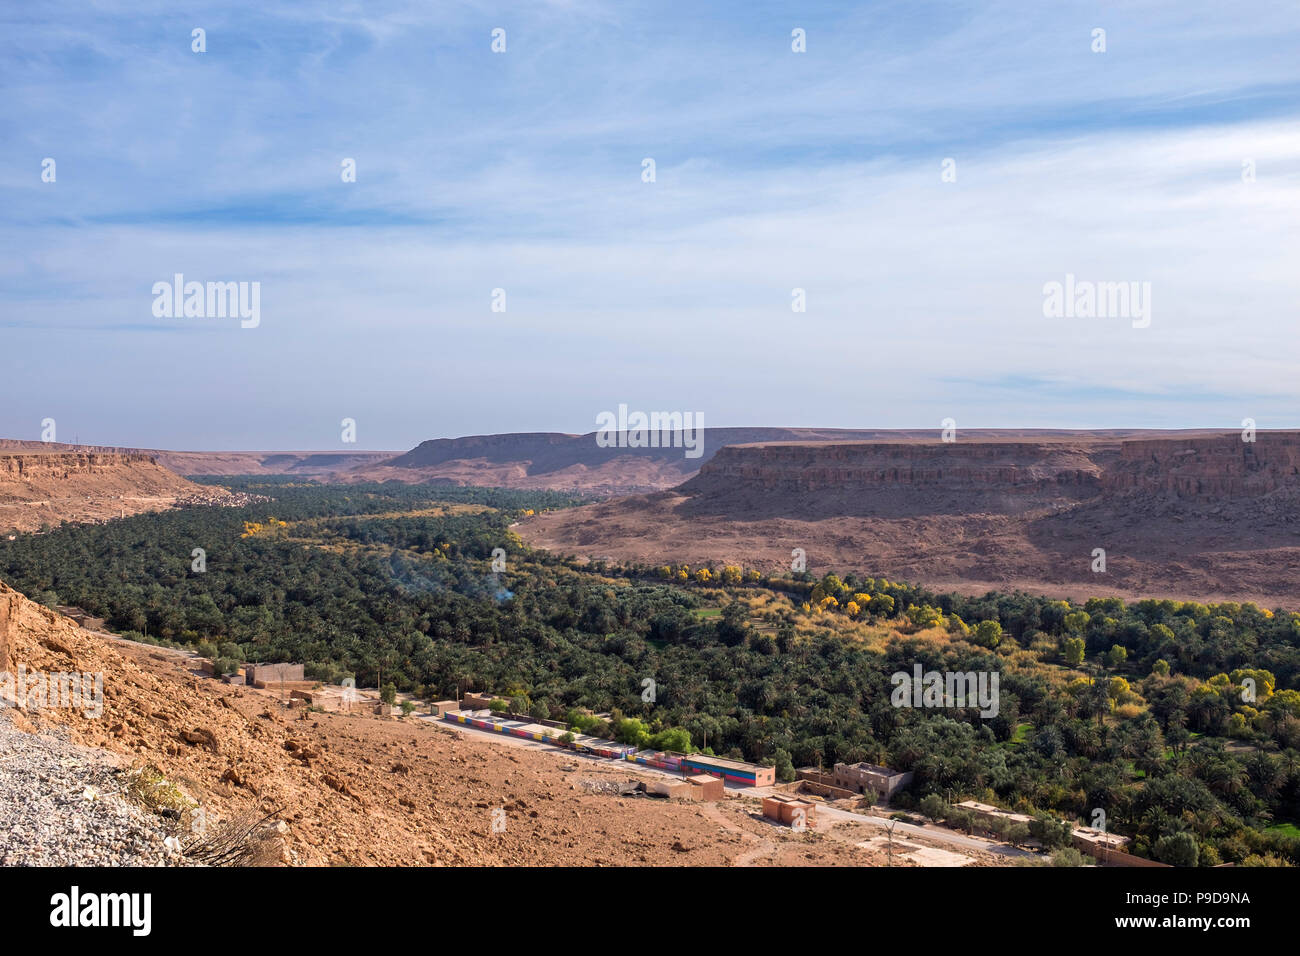 Morocco,Atlas mountains Stock Photo